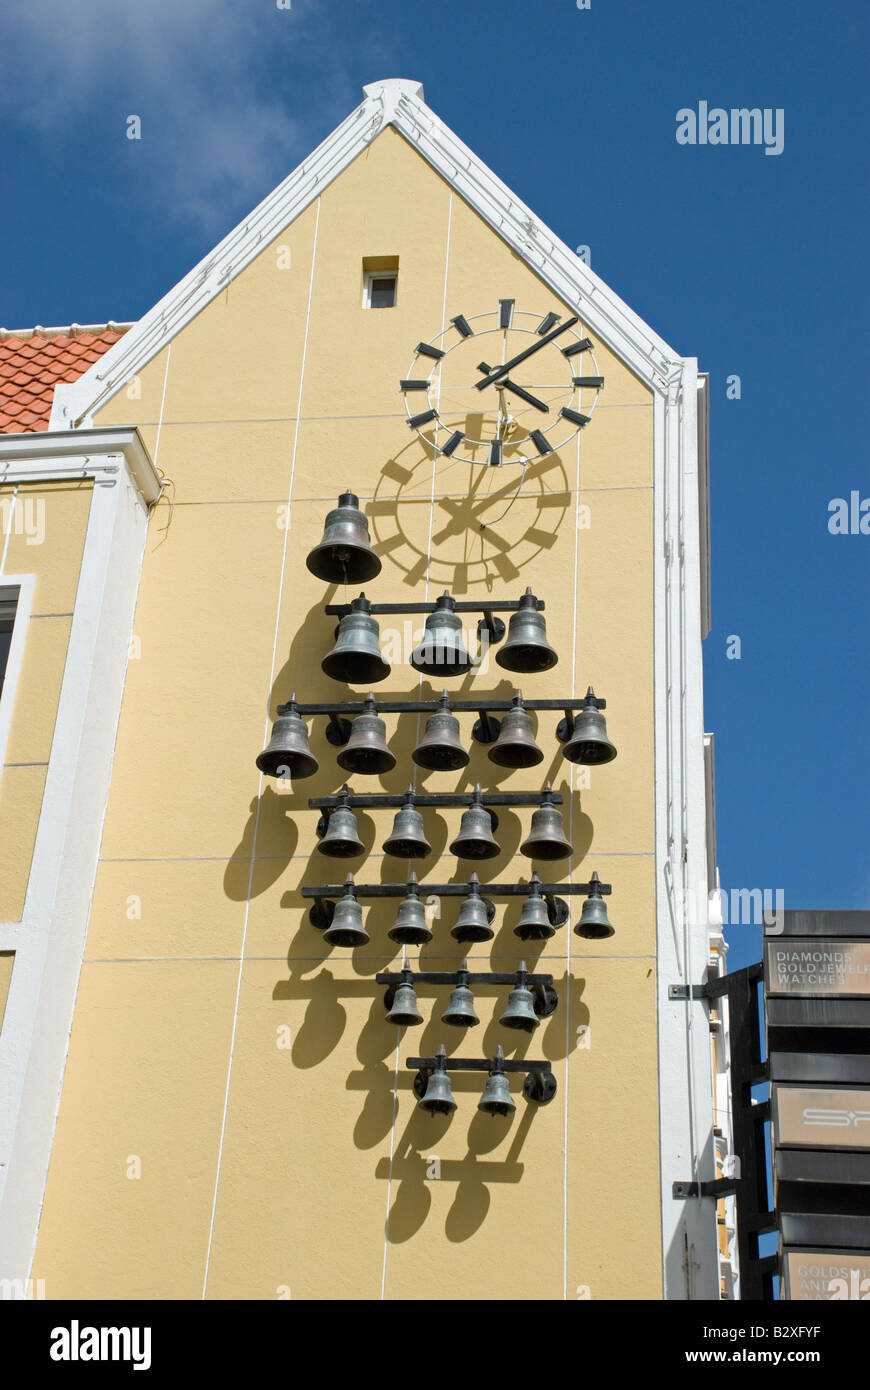 Horloge murale avec carillon des cloches. Willemstad, Curaçao, Antilles néerlandaises. Banque D'Images